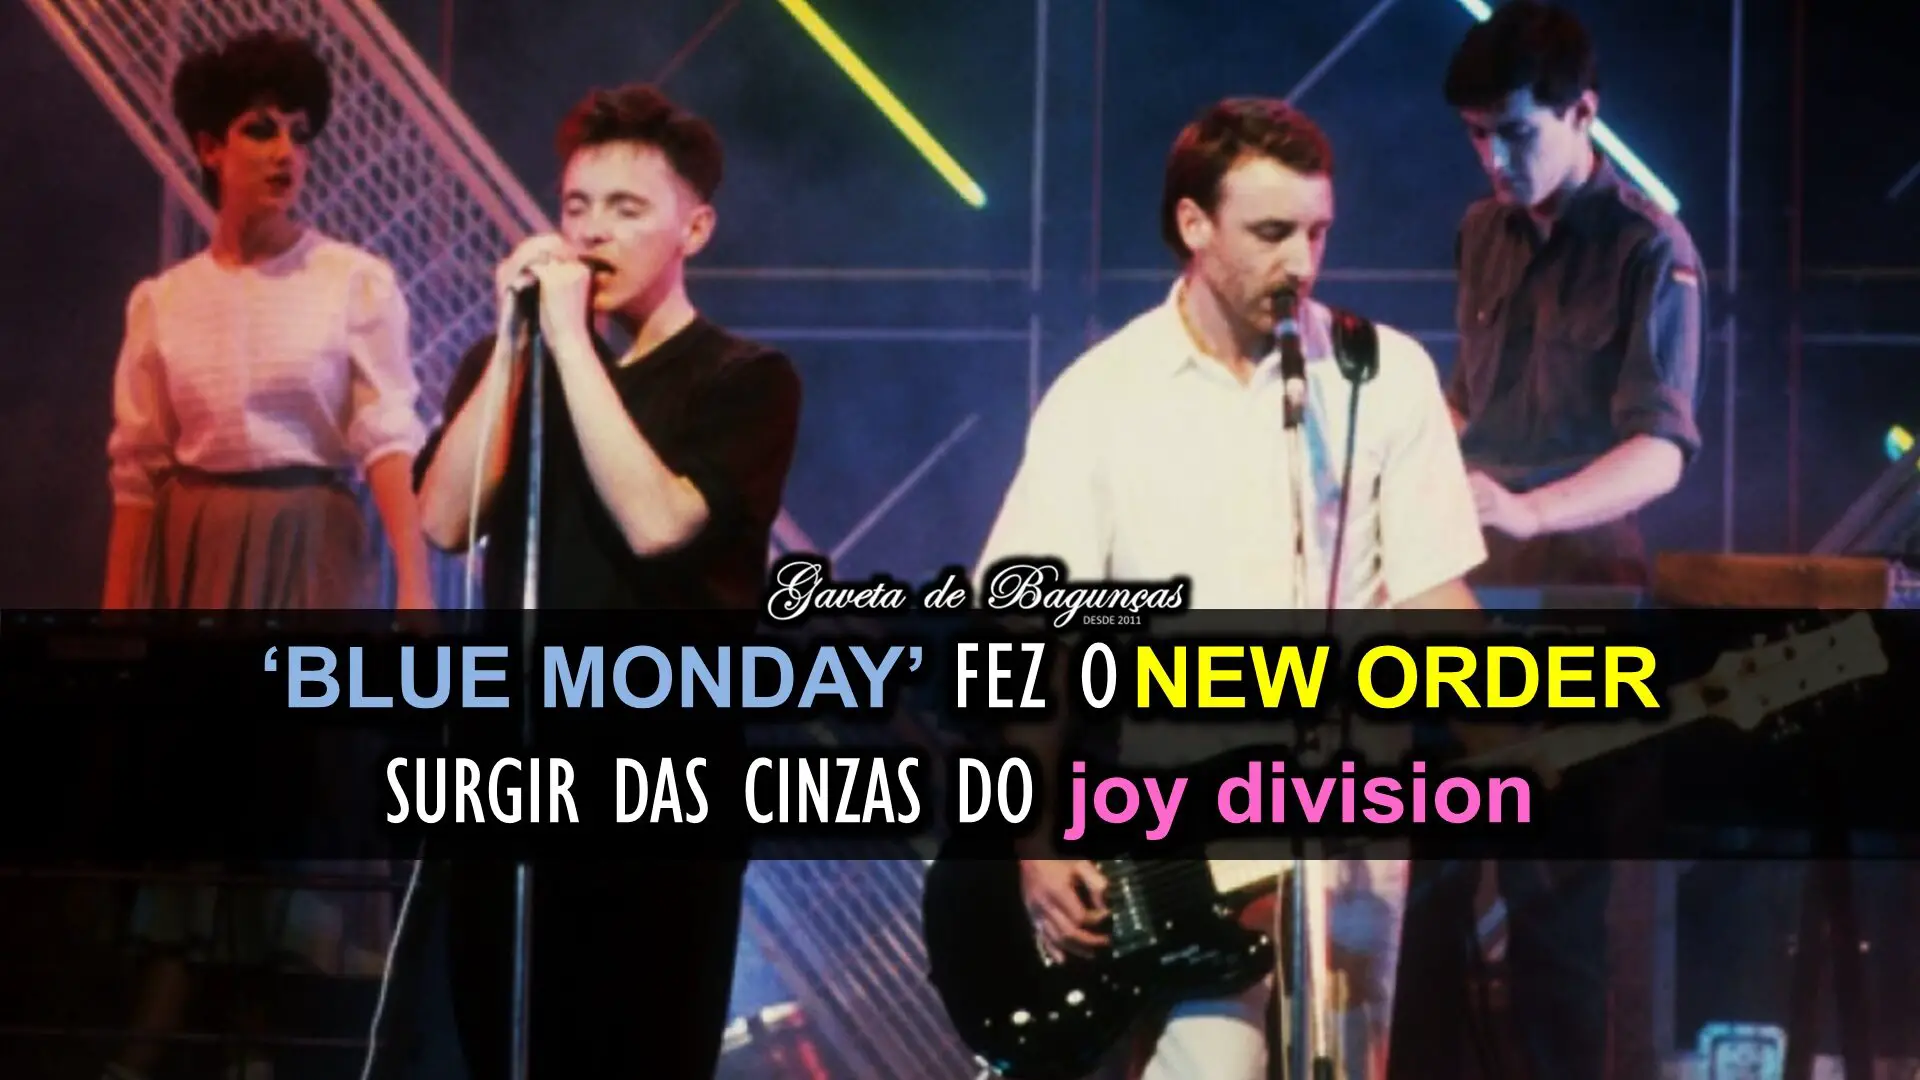 Entenda como "Blue Monday", 1º sucesso do New Order, fez a banda criar uma identidade própria além das heranças musicais do Joy Division.